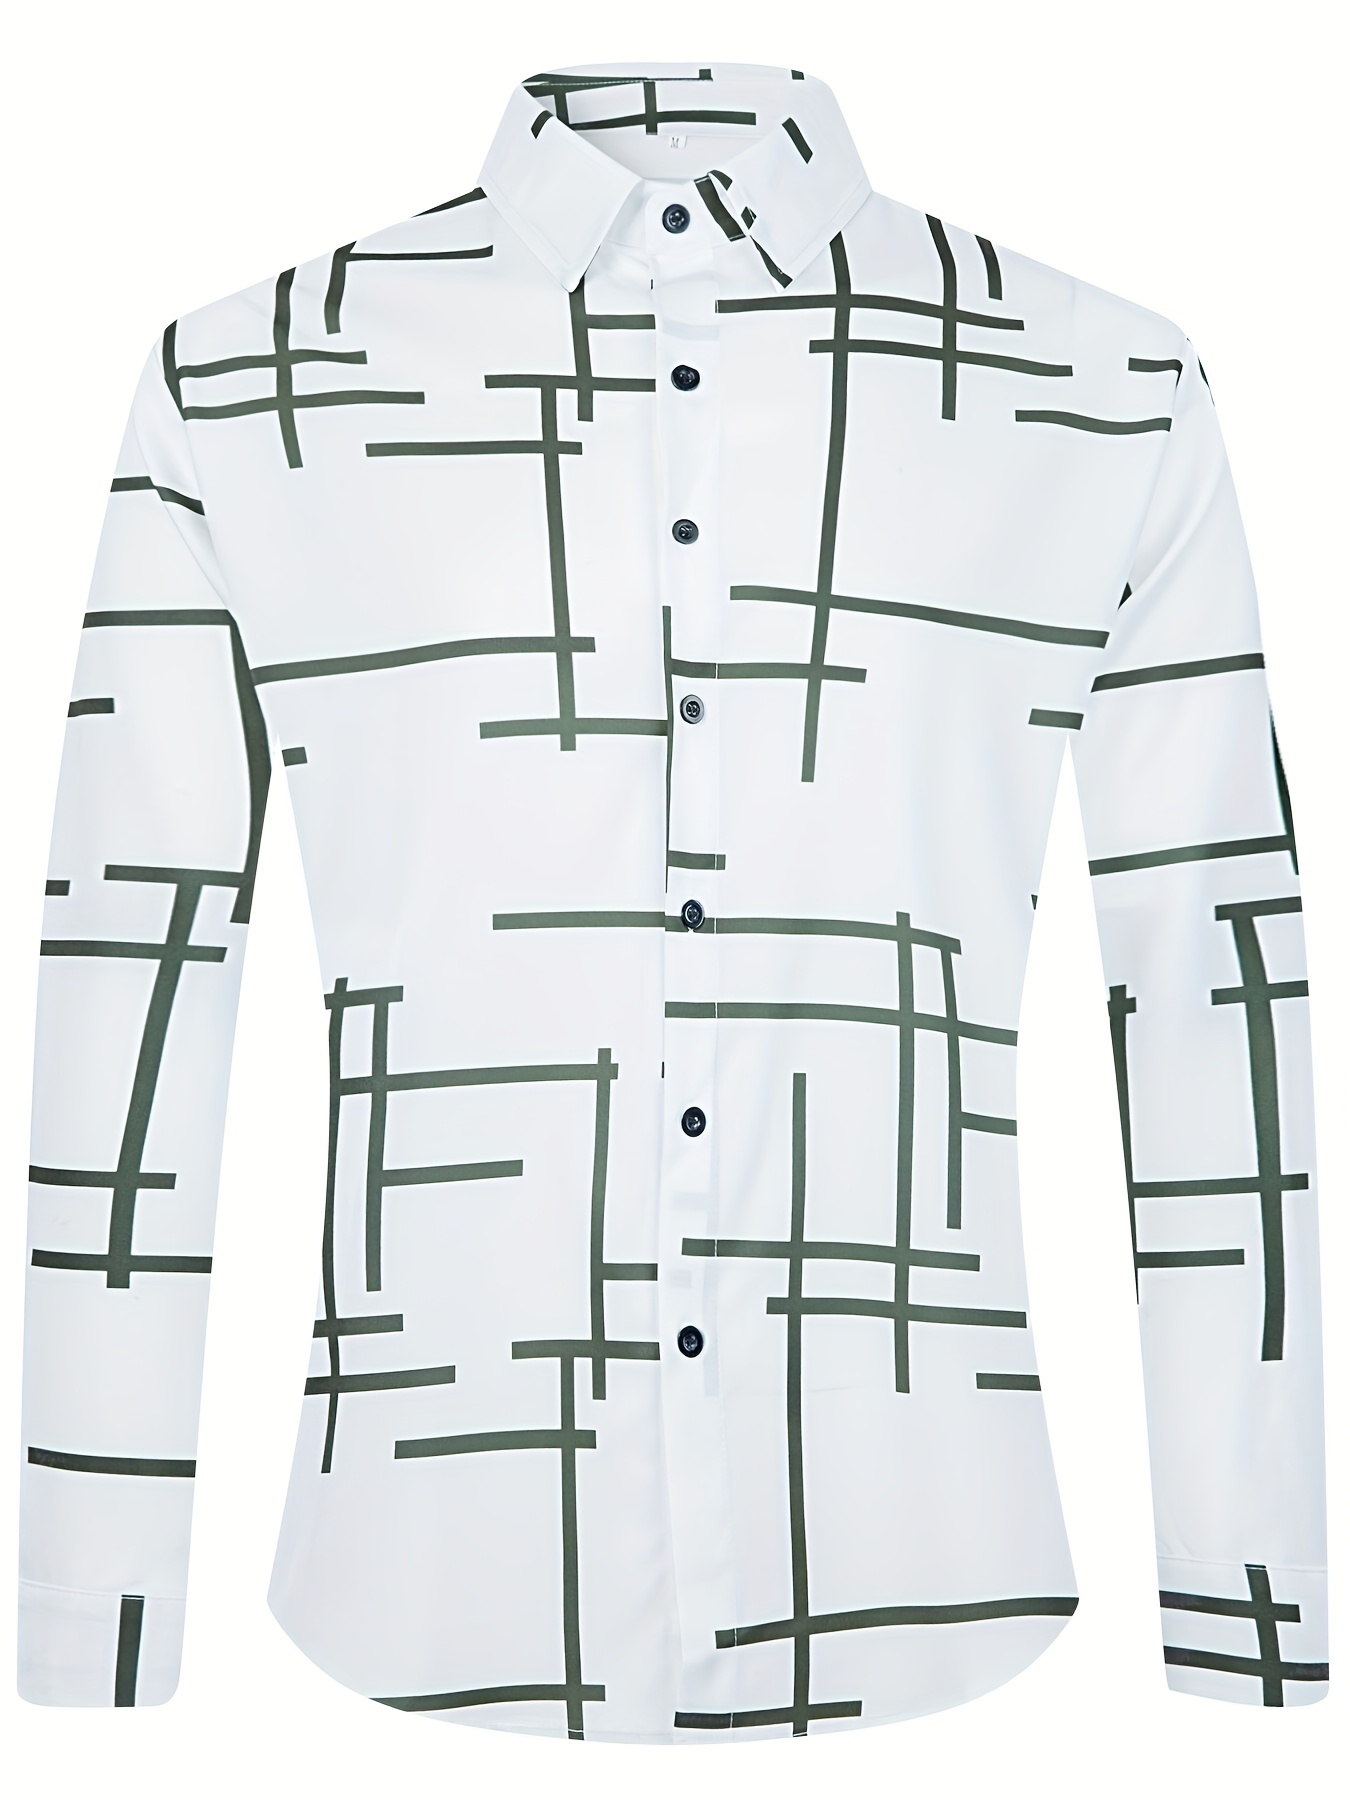 26 chemises pour hommes à coudre -patrons taille réelle fournis